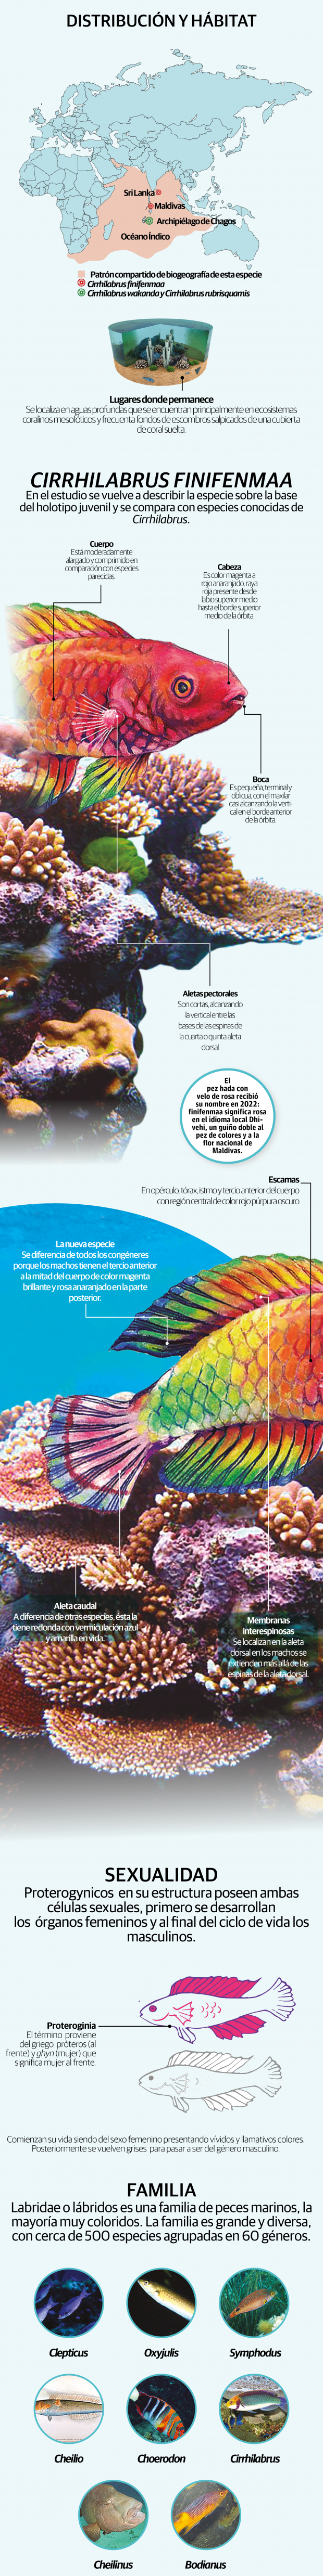 Descubren especie de pez arcoíris que nace hembra y envejece en macho